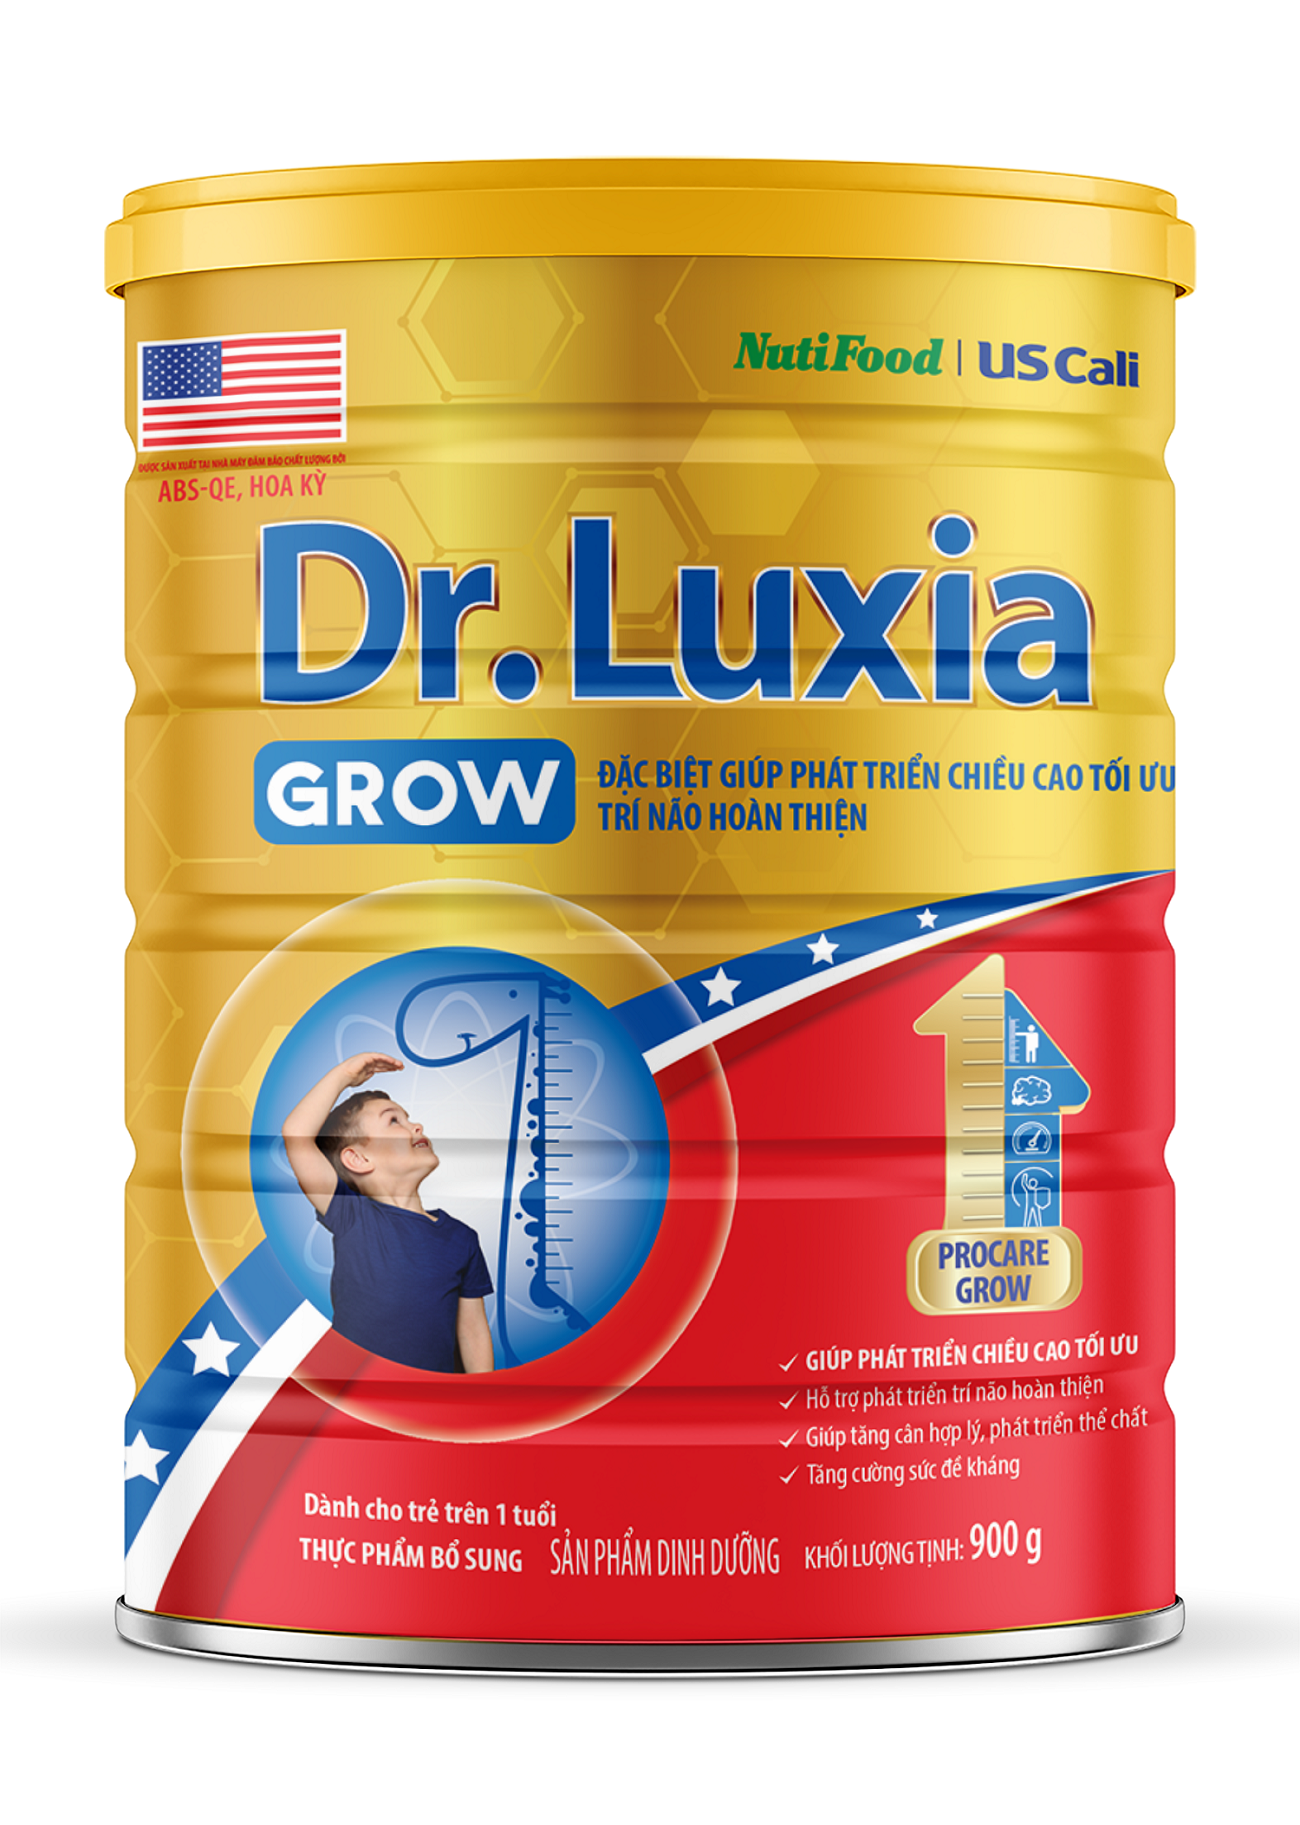 Sản phẩm dinh dưỡng Dr. Luxia Grow.